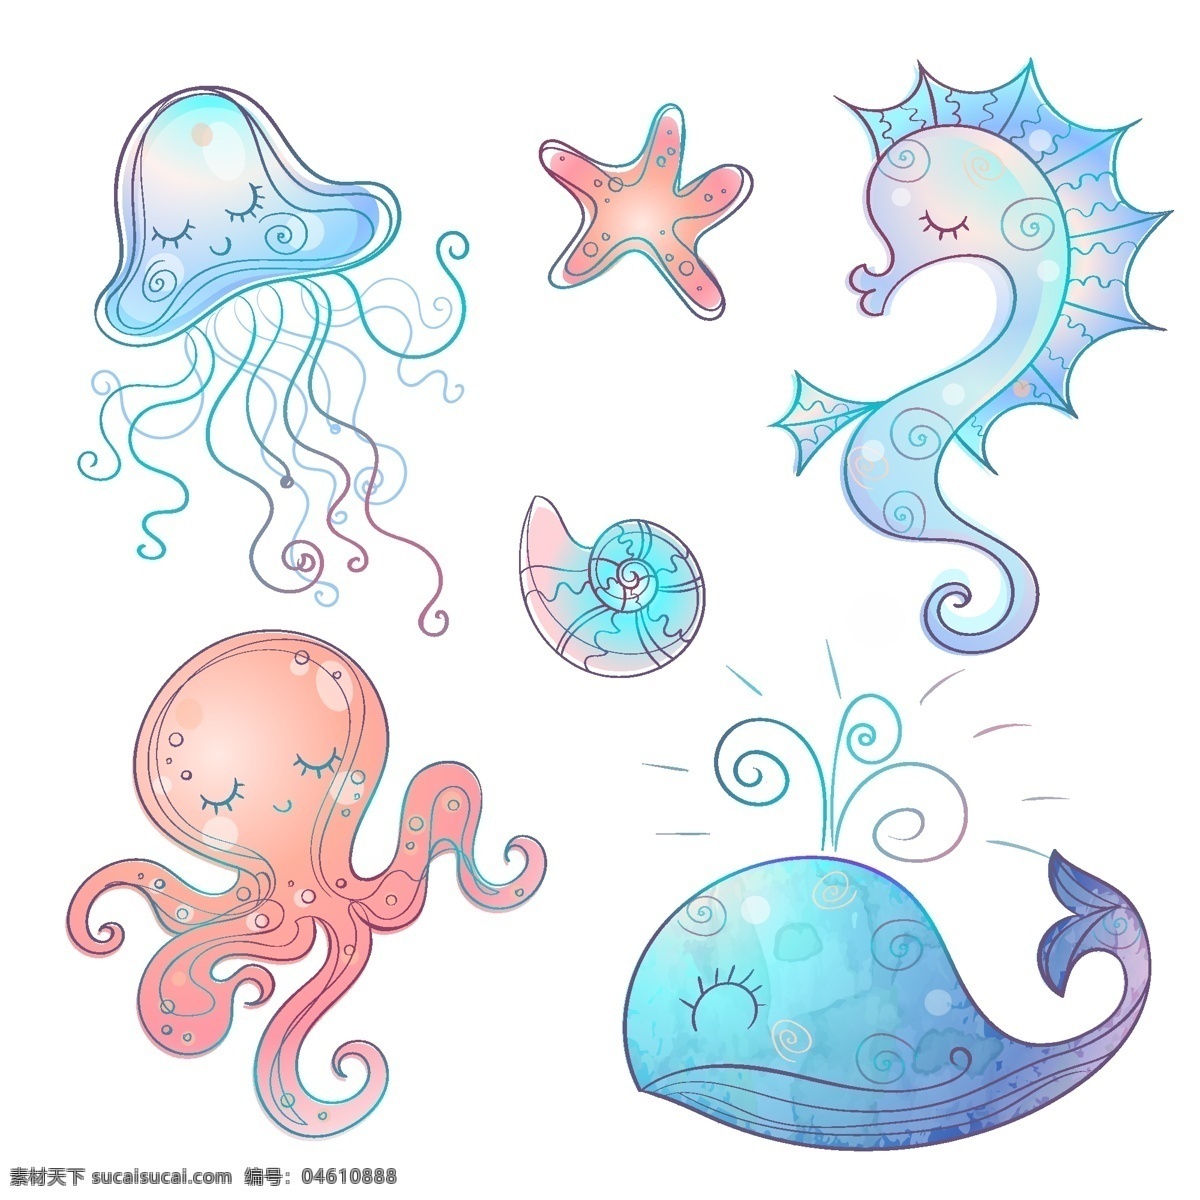 鲸鱼图片 鲸鱼 章鱼 海马 水母 海螺 海星 动漫动画 动漫人物